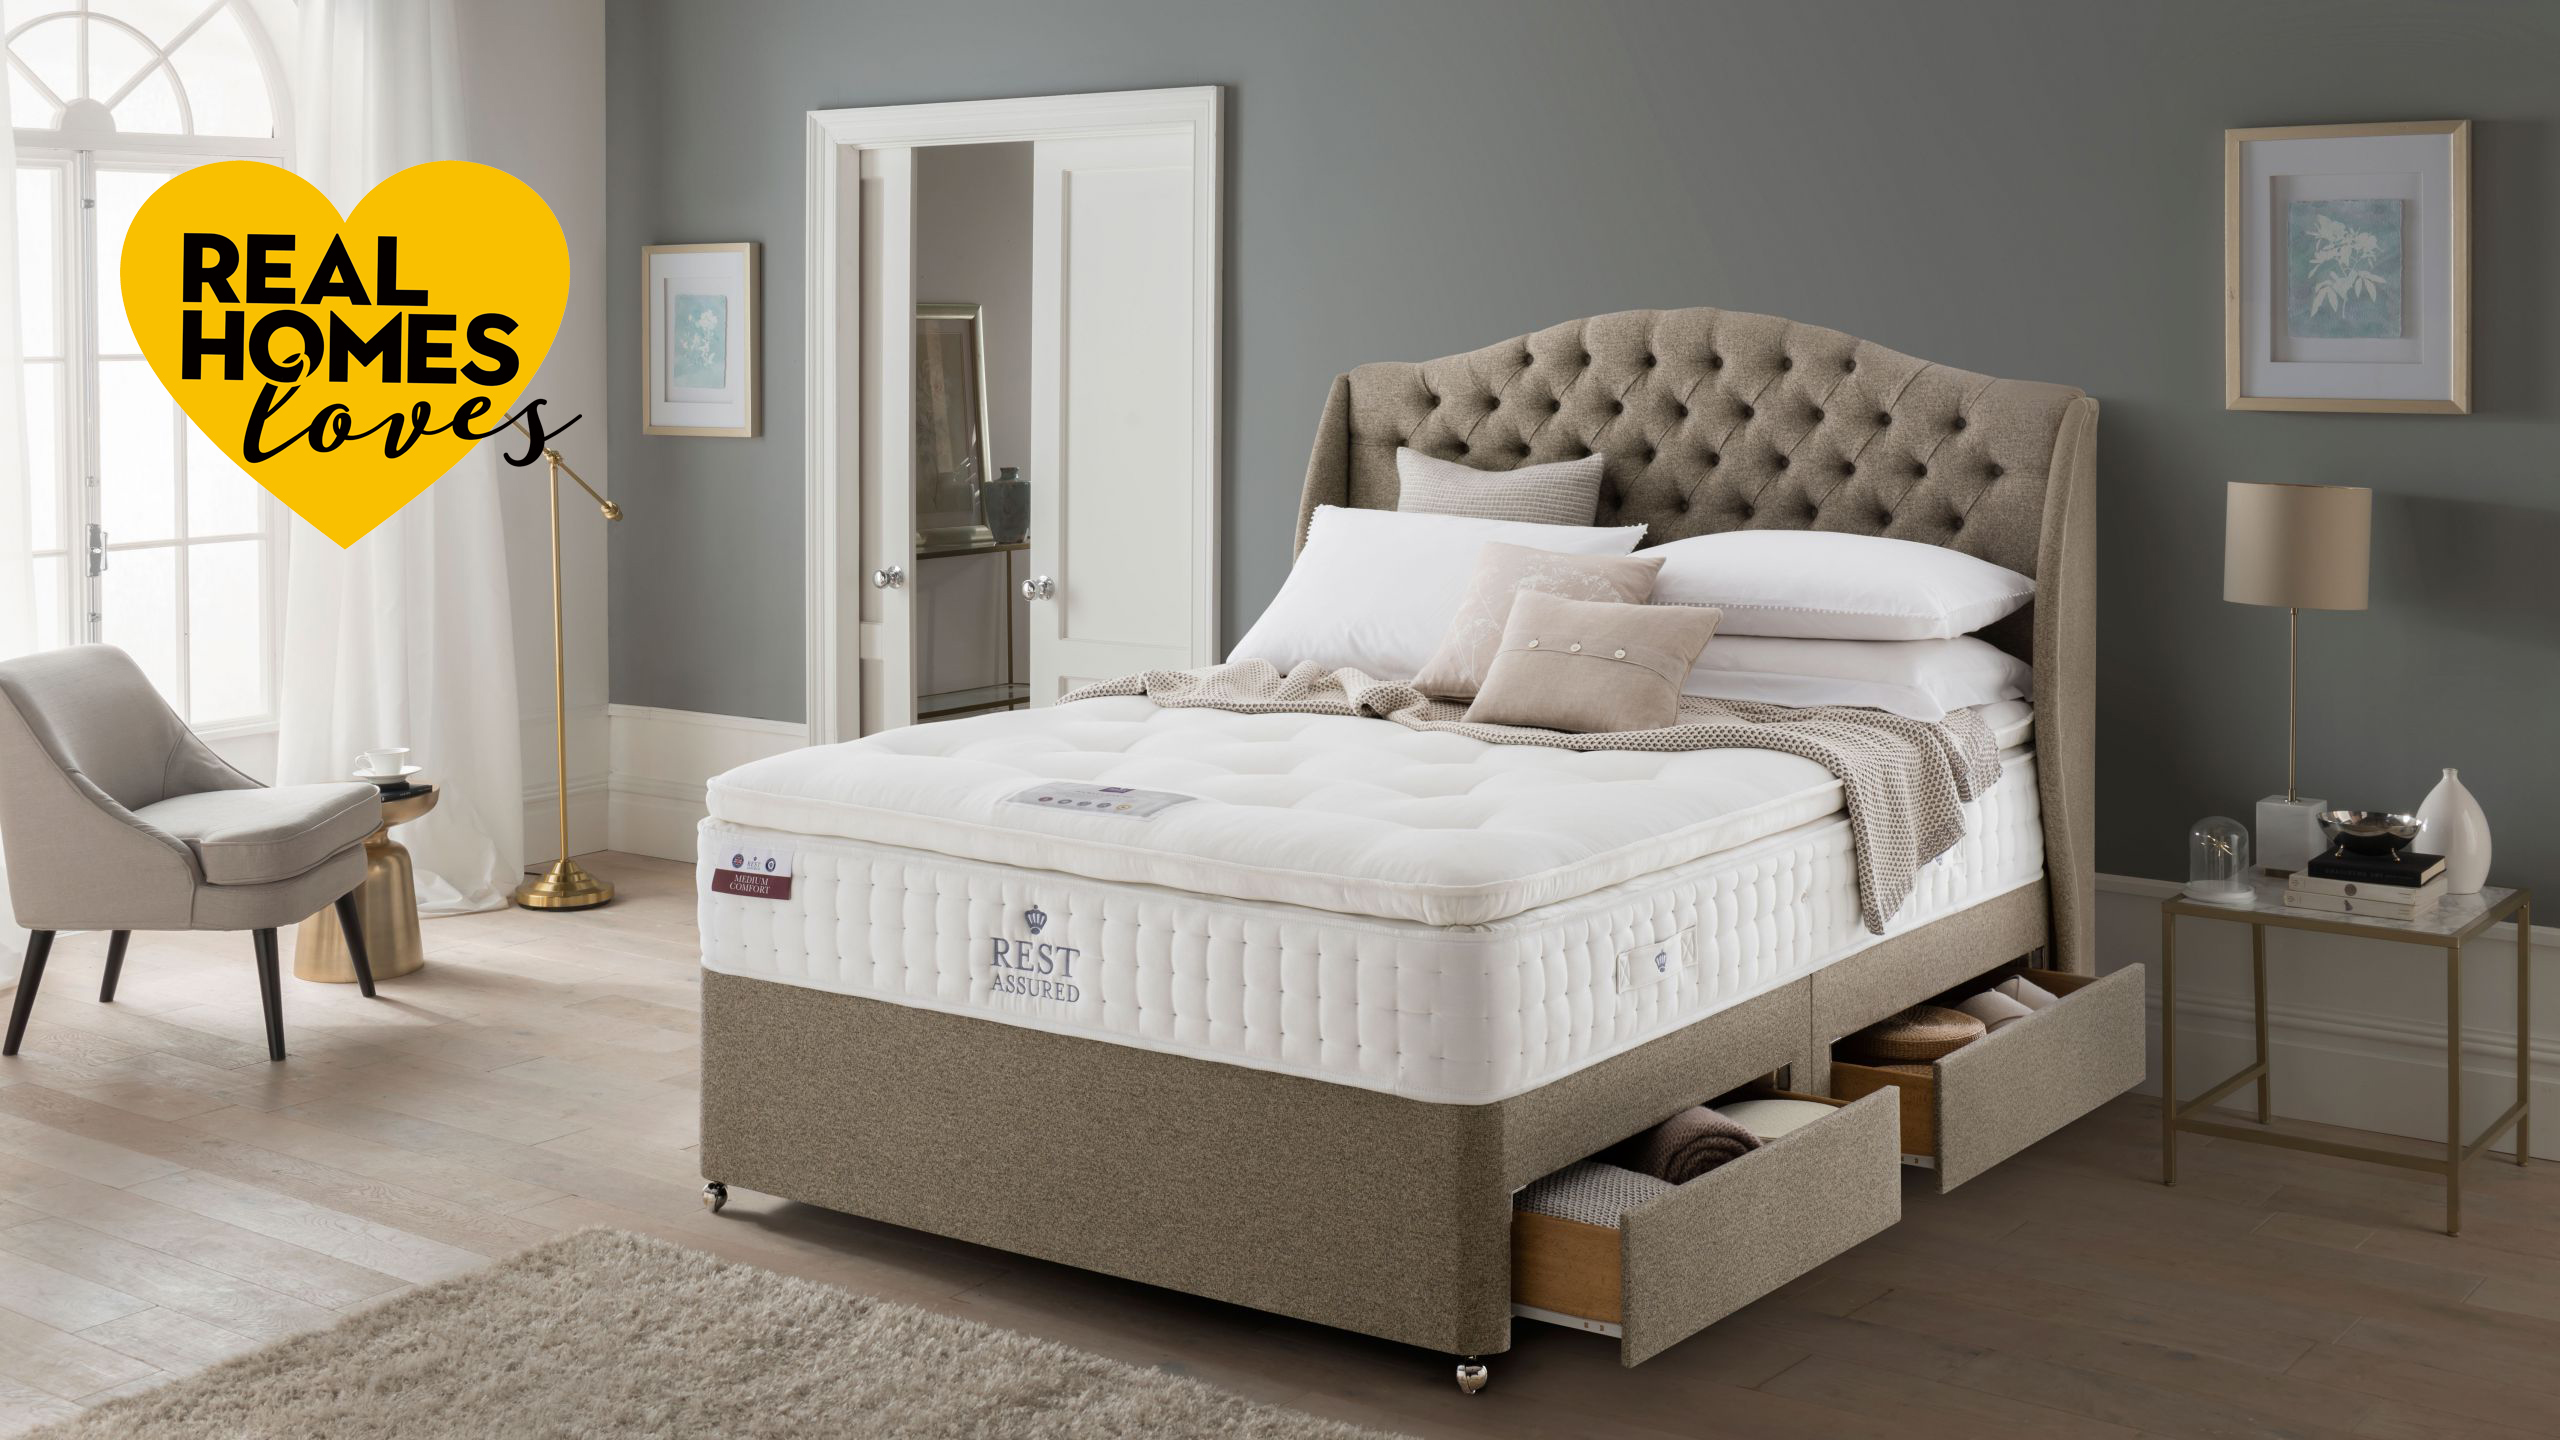 rest assured latex mattress review